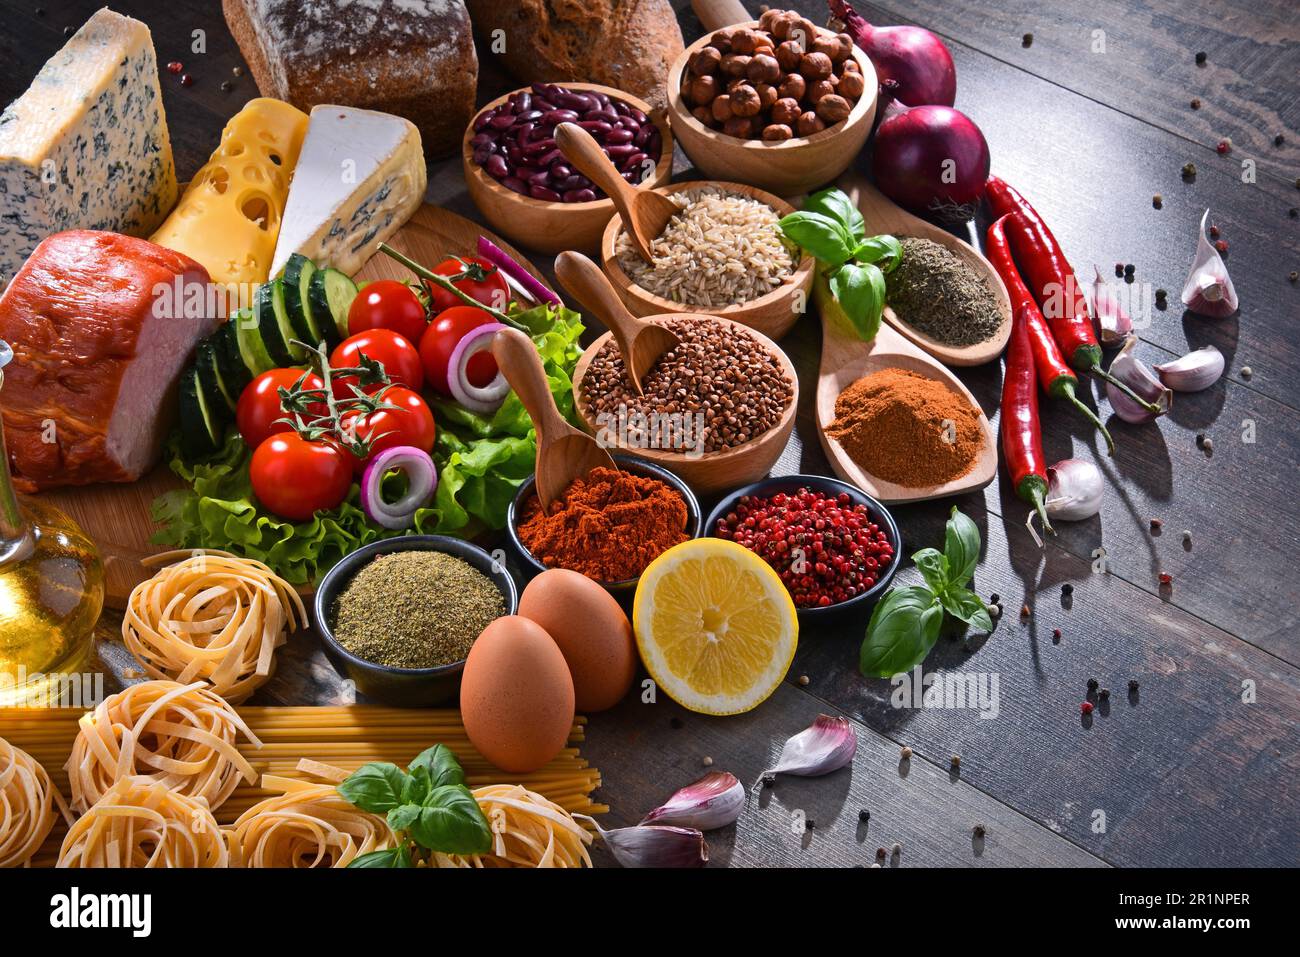 Composizione con un assortimento di prodotti alimentari biologici sul tavolo Foto Stock